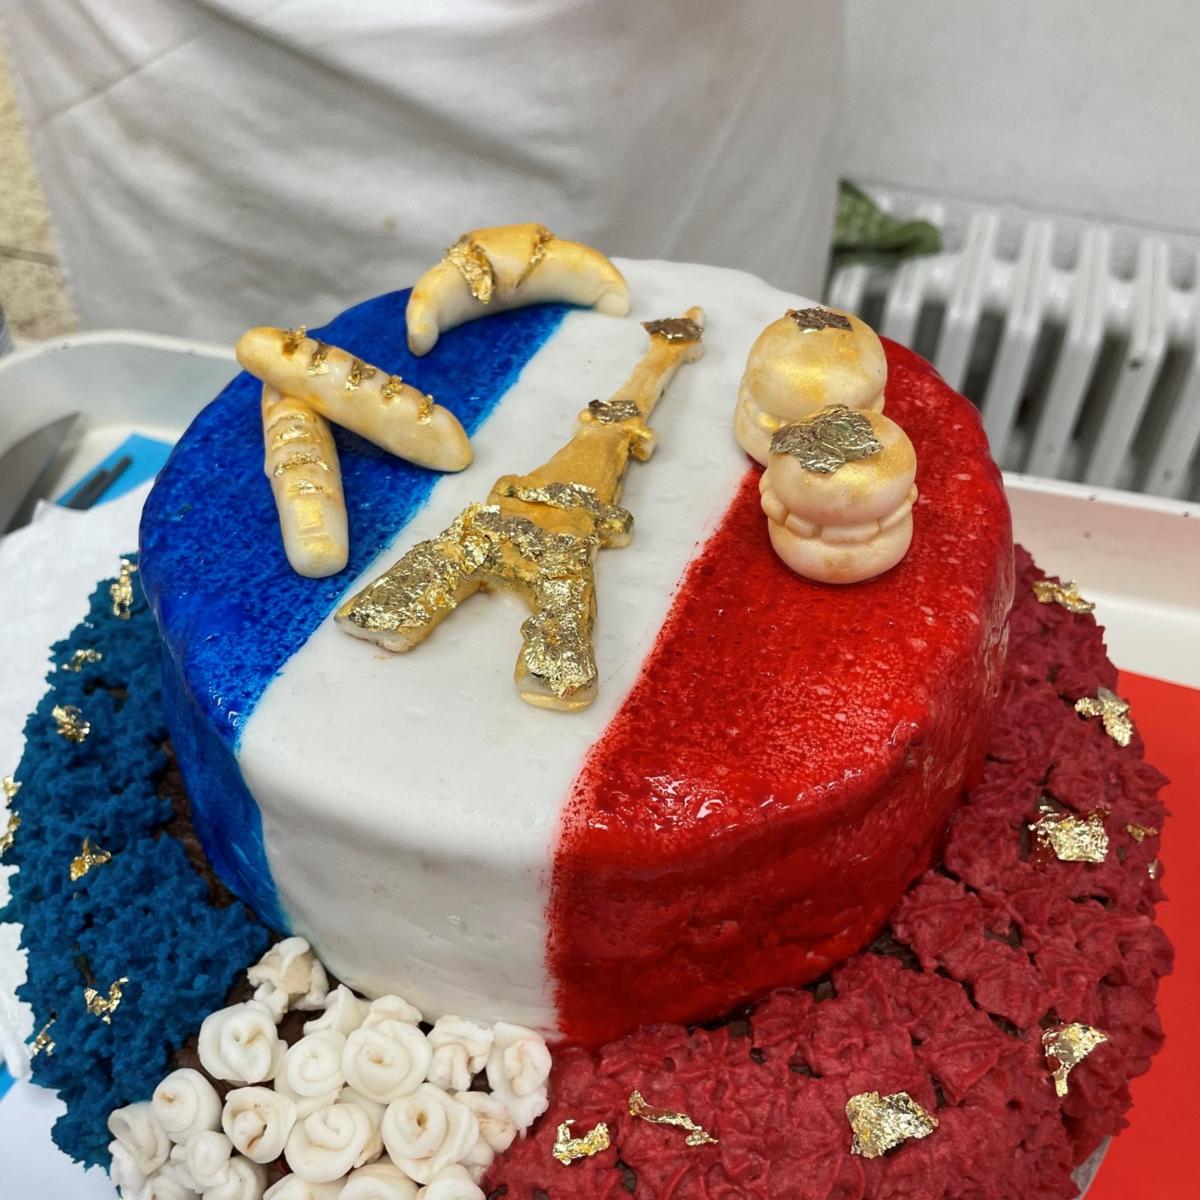 La semaine française: Concours de pâtisserie – Französischer Kuchenwettbewerb nach drei Jahren erfolgreich wiederbelebt!